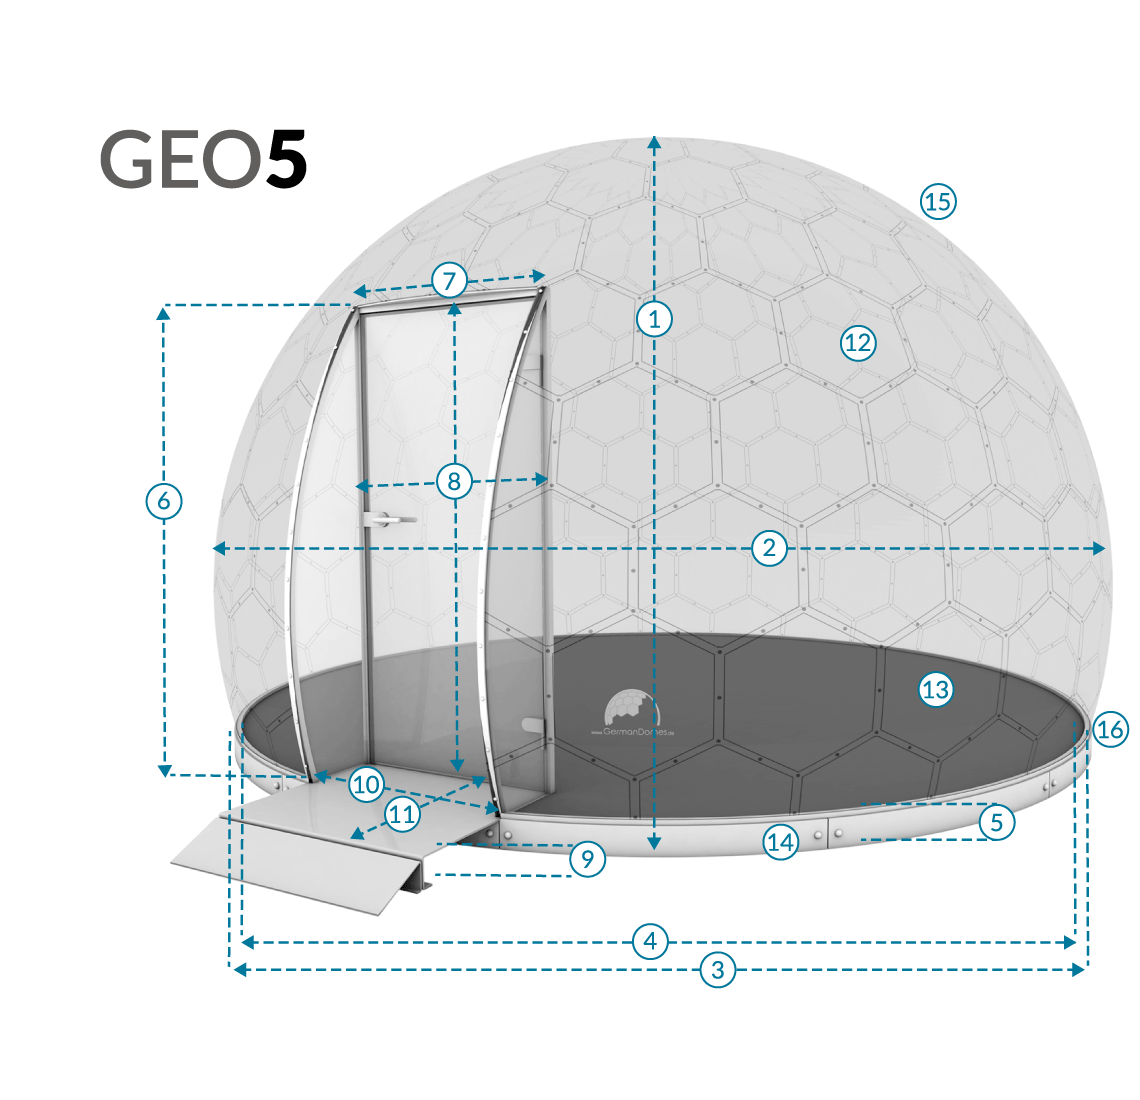 GermanDomes - Glaskuppel, Glas Domes, Geodomes, Geodätische Kuppel, Geodesic Domes